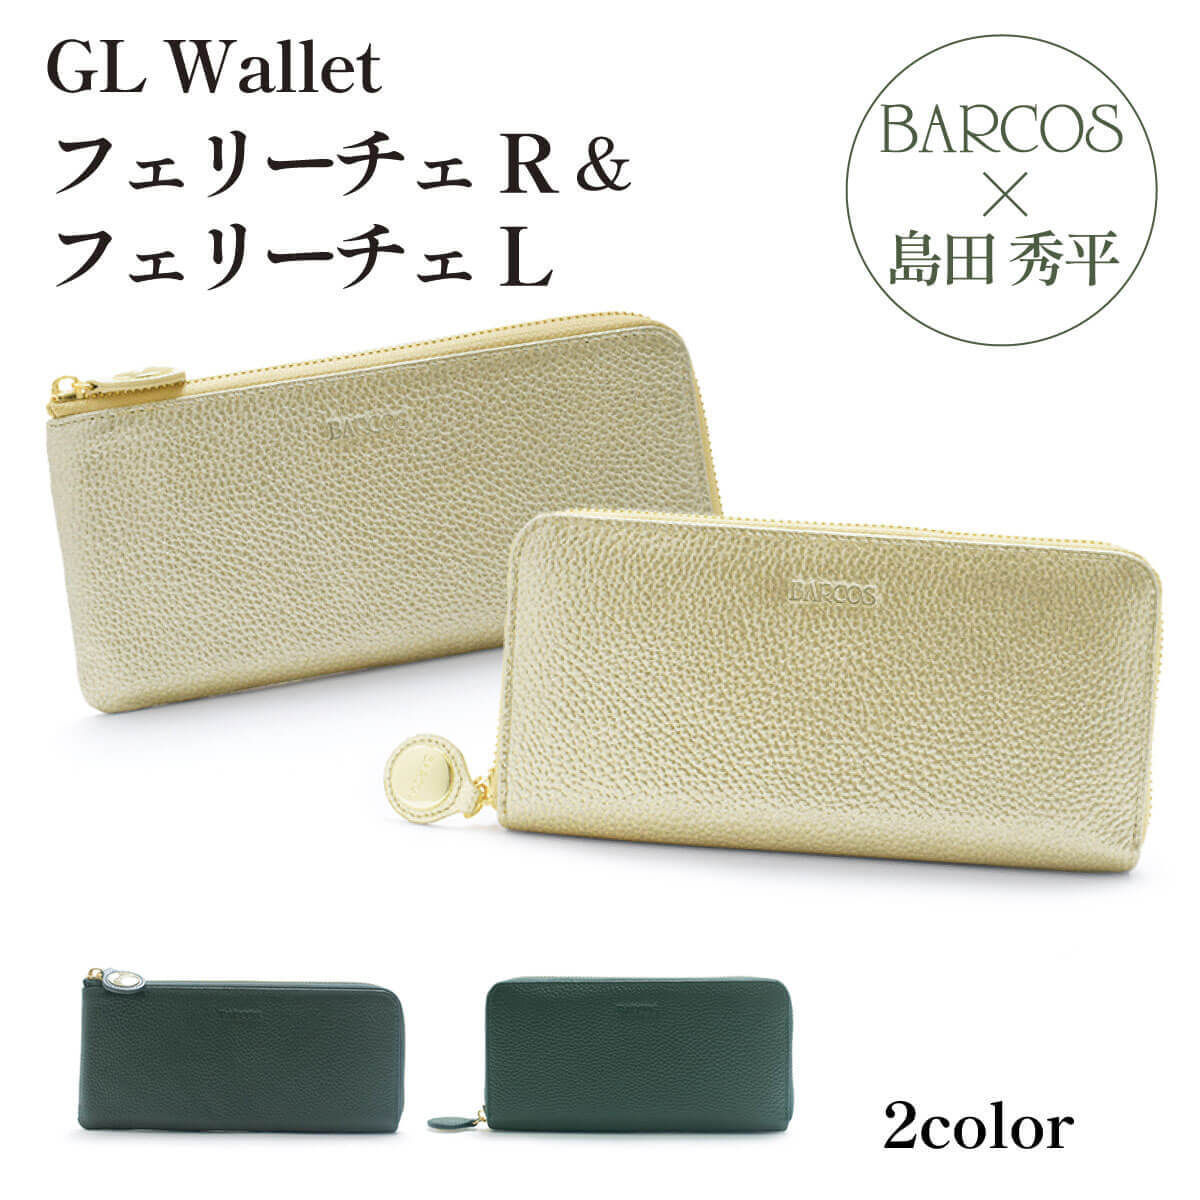 バルコス 金の財布 緑の財布 島田秀平 コラボ GLウォレッ